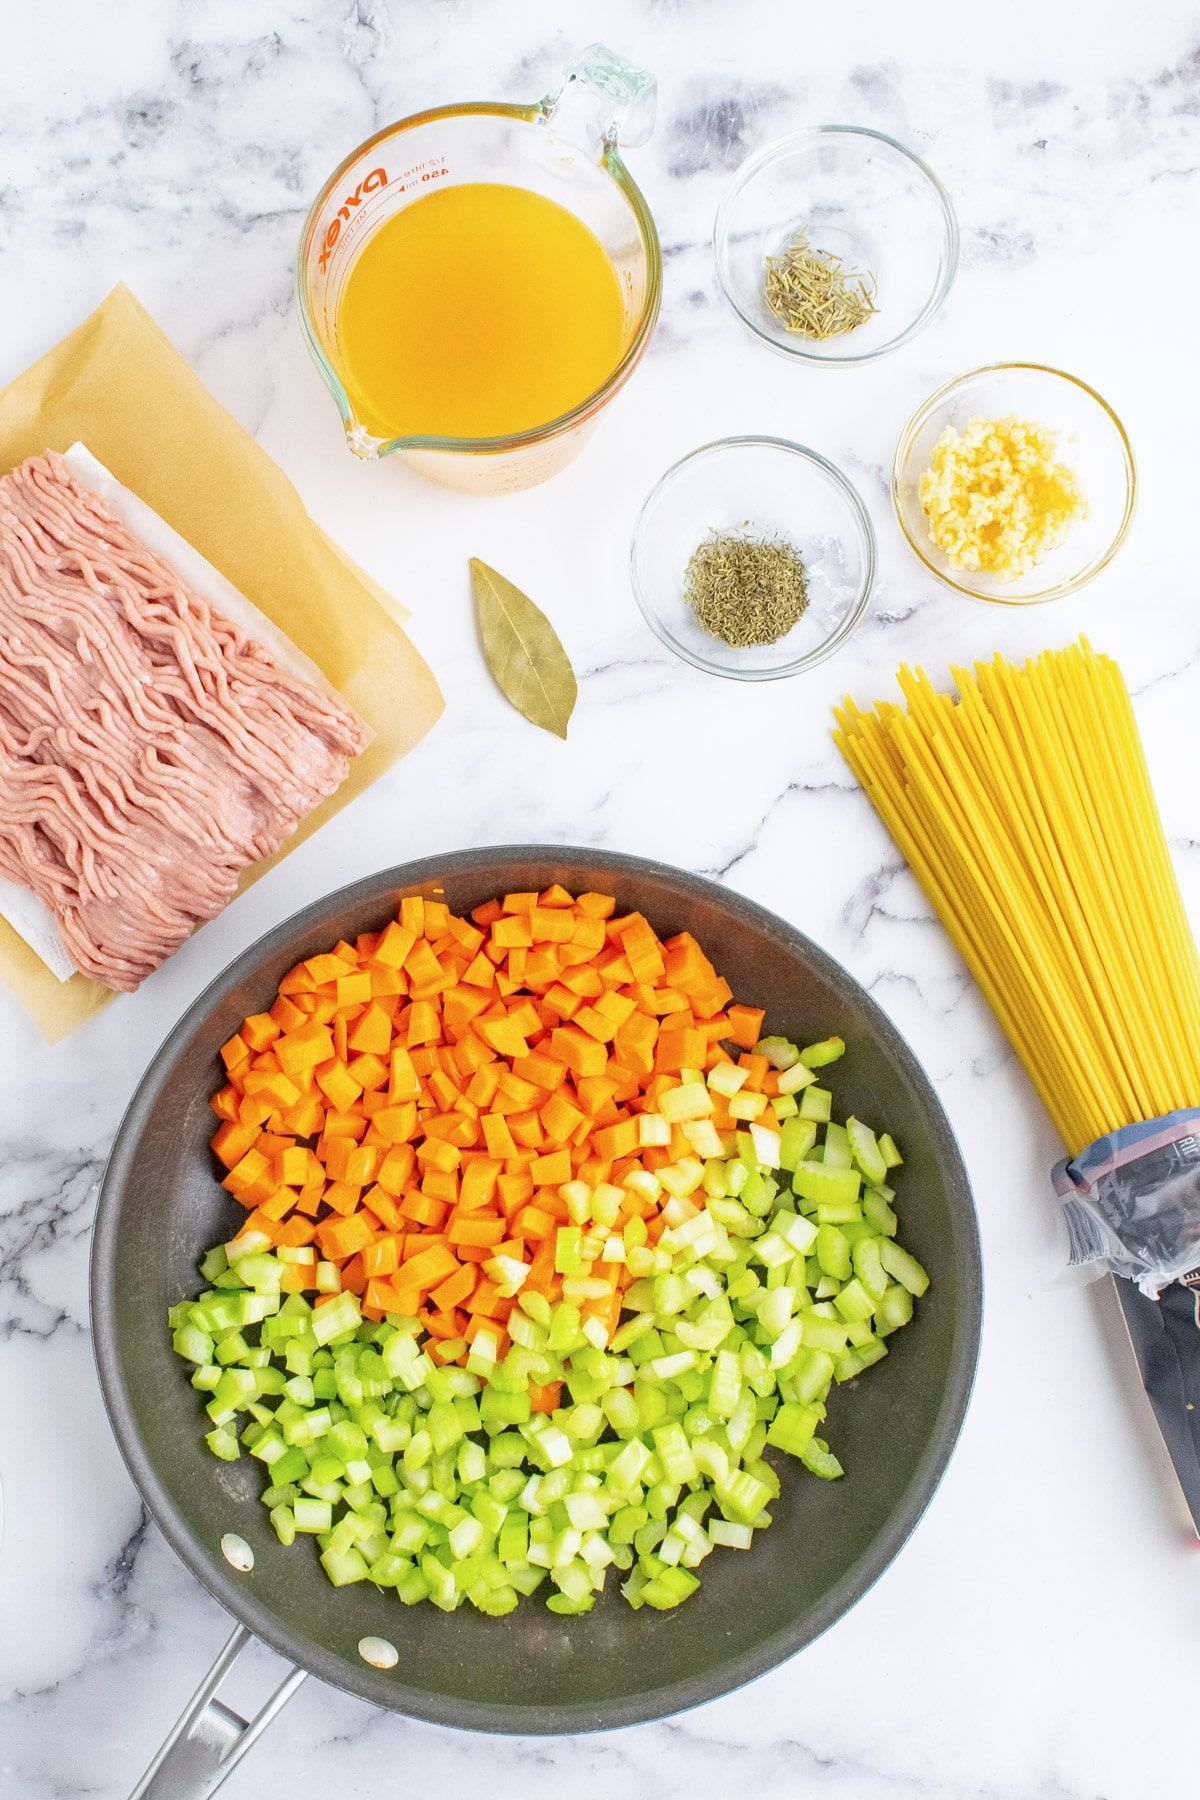 Σέλινο και καρότα σε ένα τηγάνι με άλλα συστατικά για αλεσμένα ζυμαρικά γαλοπούλας γύρω του